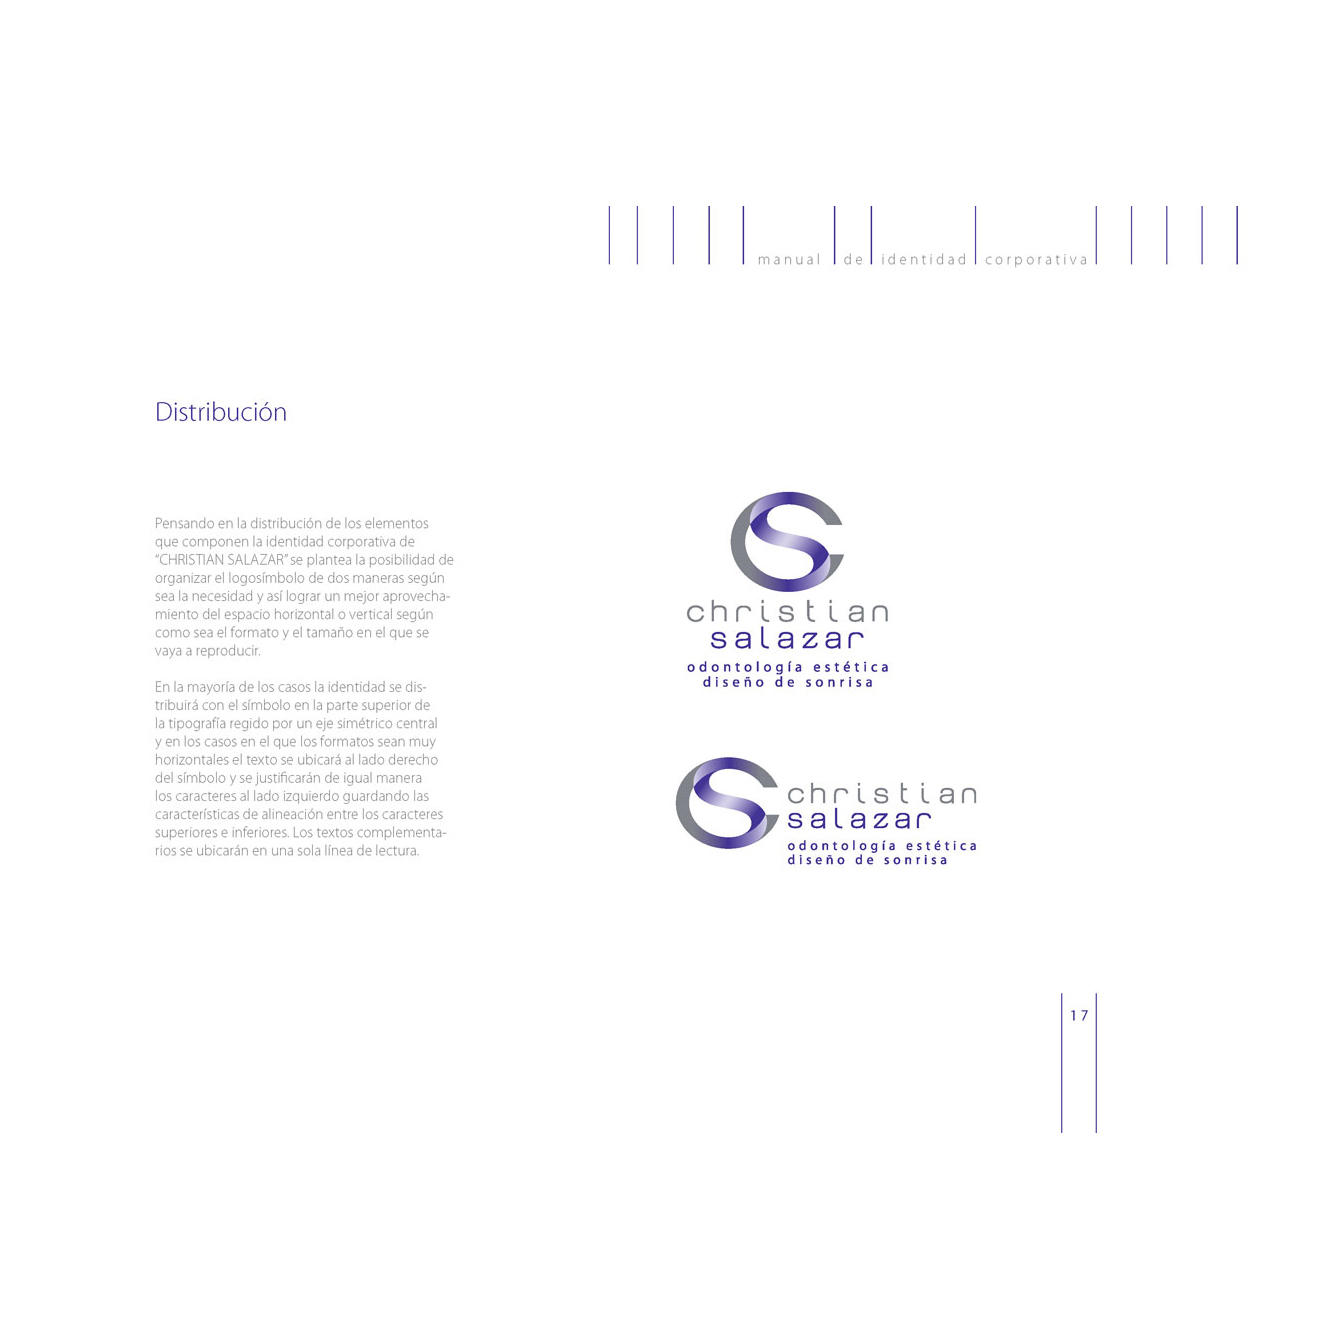 Diseño de Identidad Visual y Logotipo para la marca Christian Salazar Odontología Estética